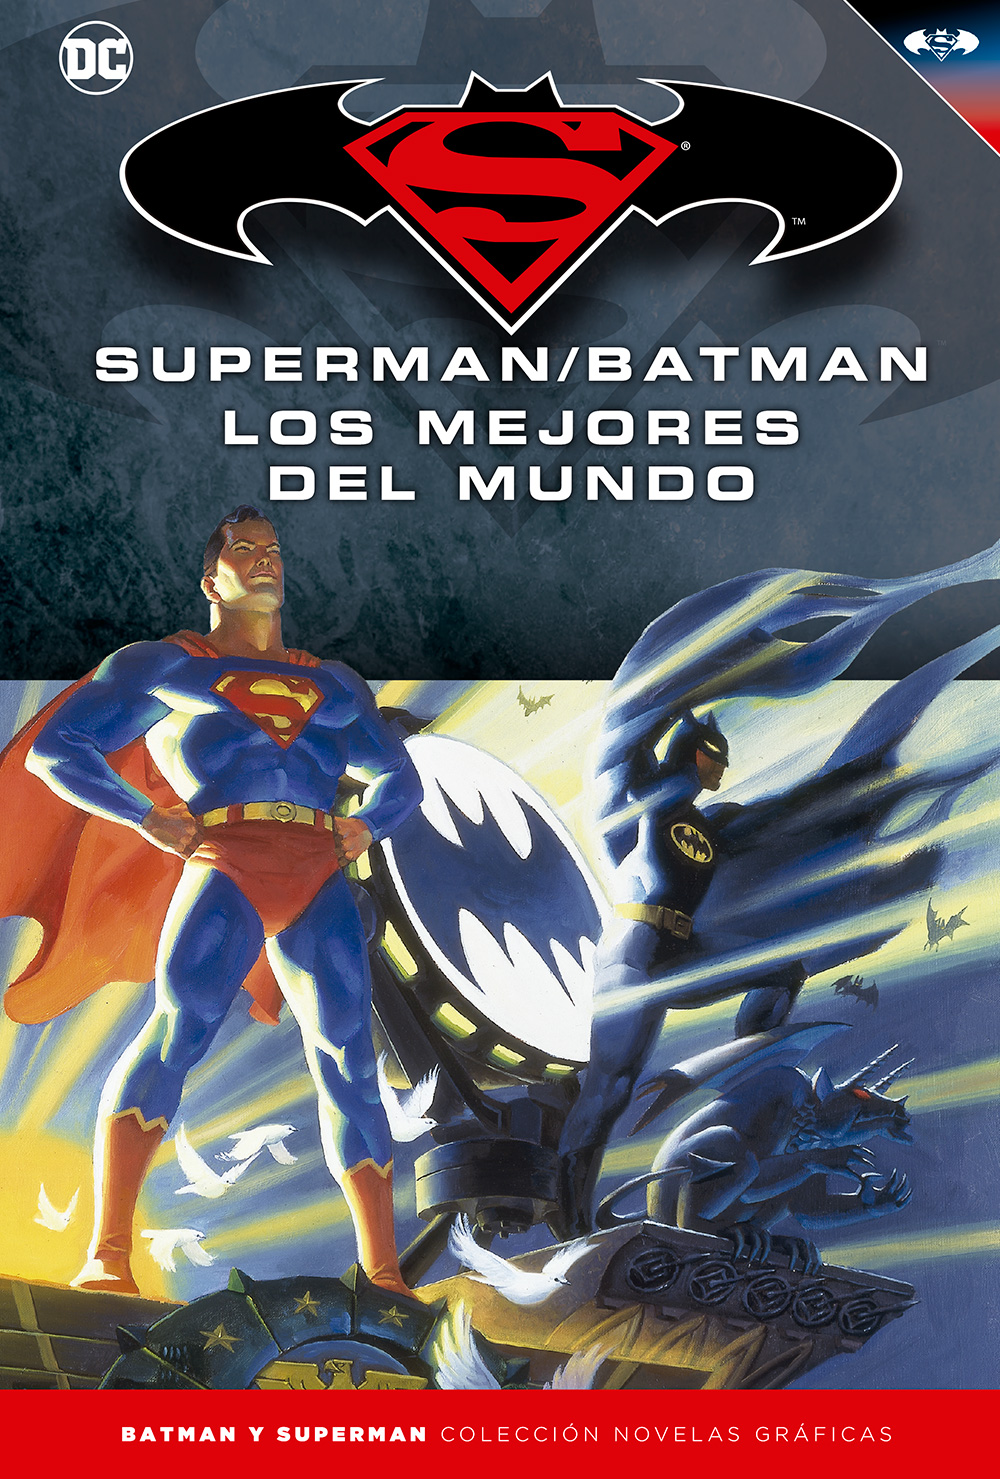 31 - [DC - Salvat] Batman y Superman: Colección Novelas Gráficas - Página 7 Portada_BMSM_16_LosMejoresdelMundo